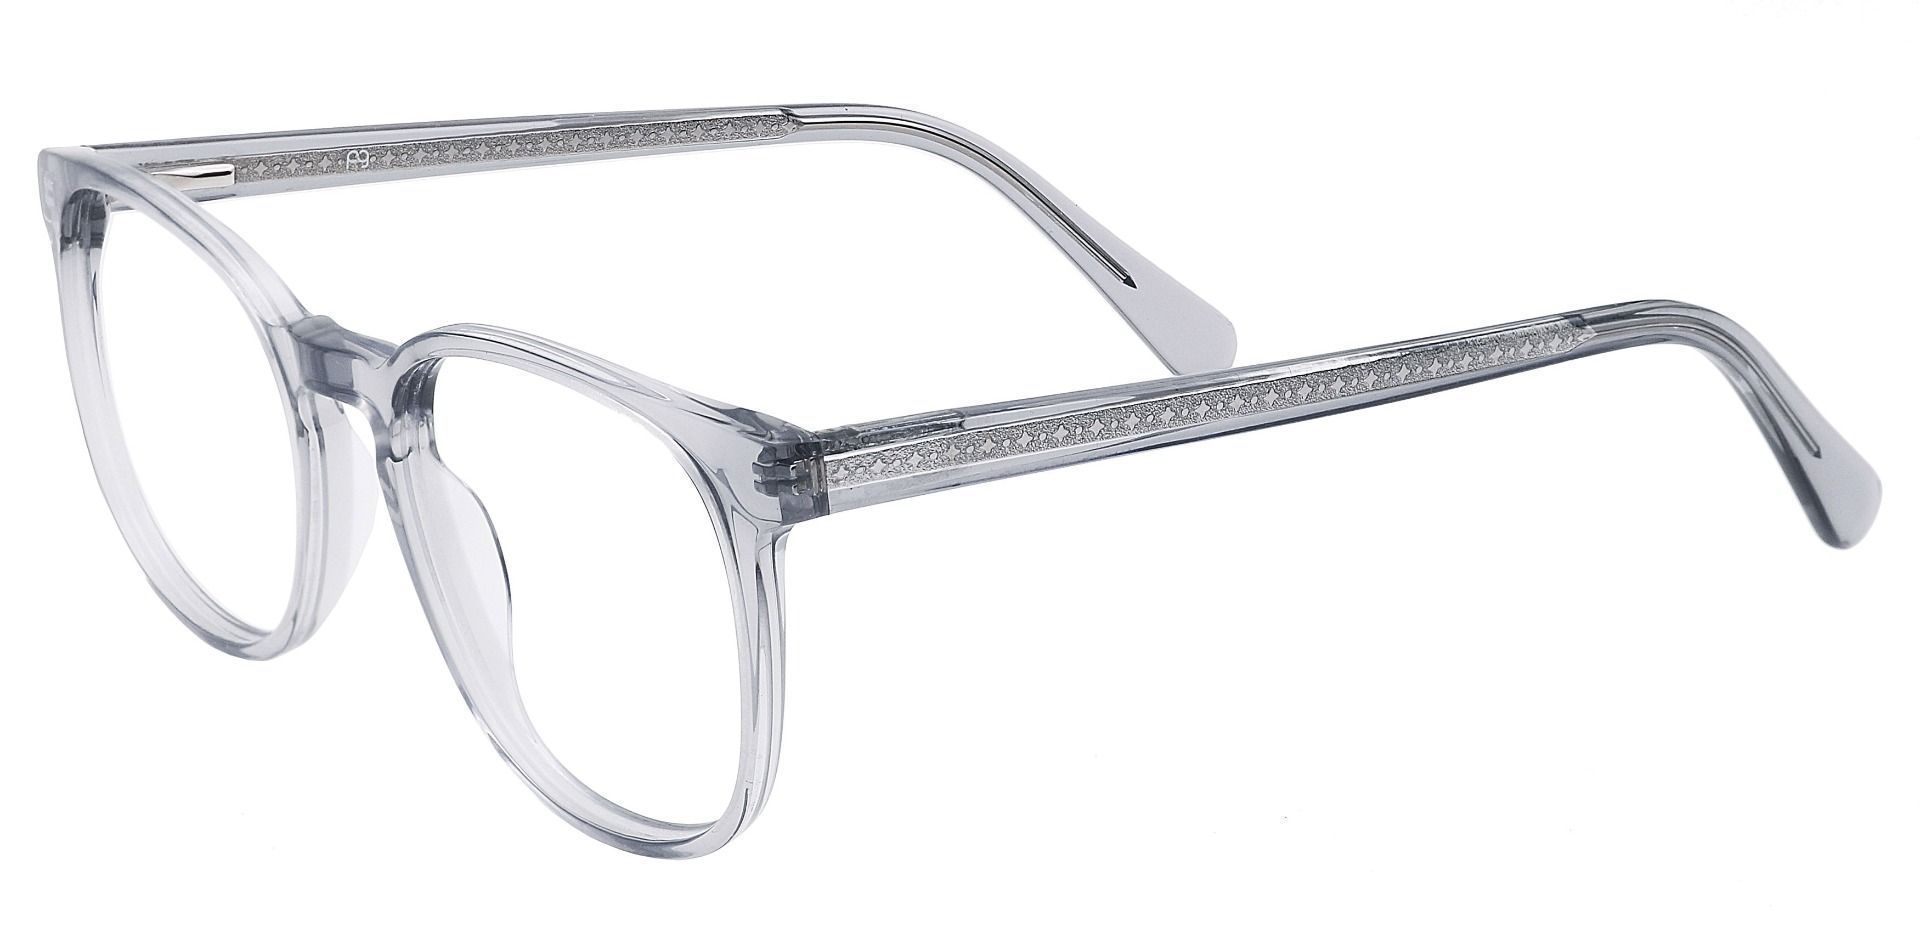 Nebula Round Prescription Glasses - Gray